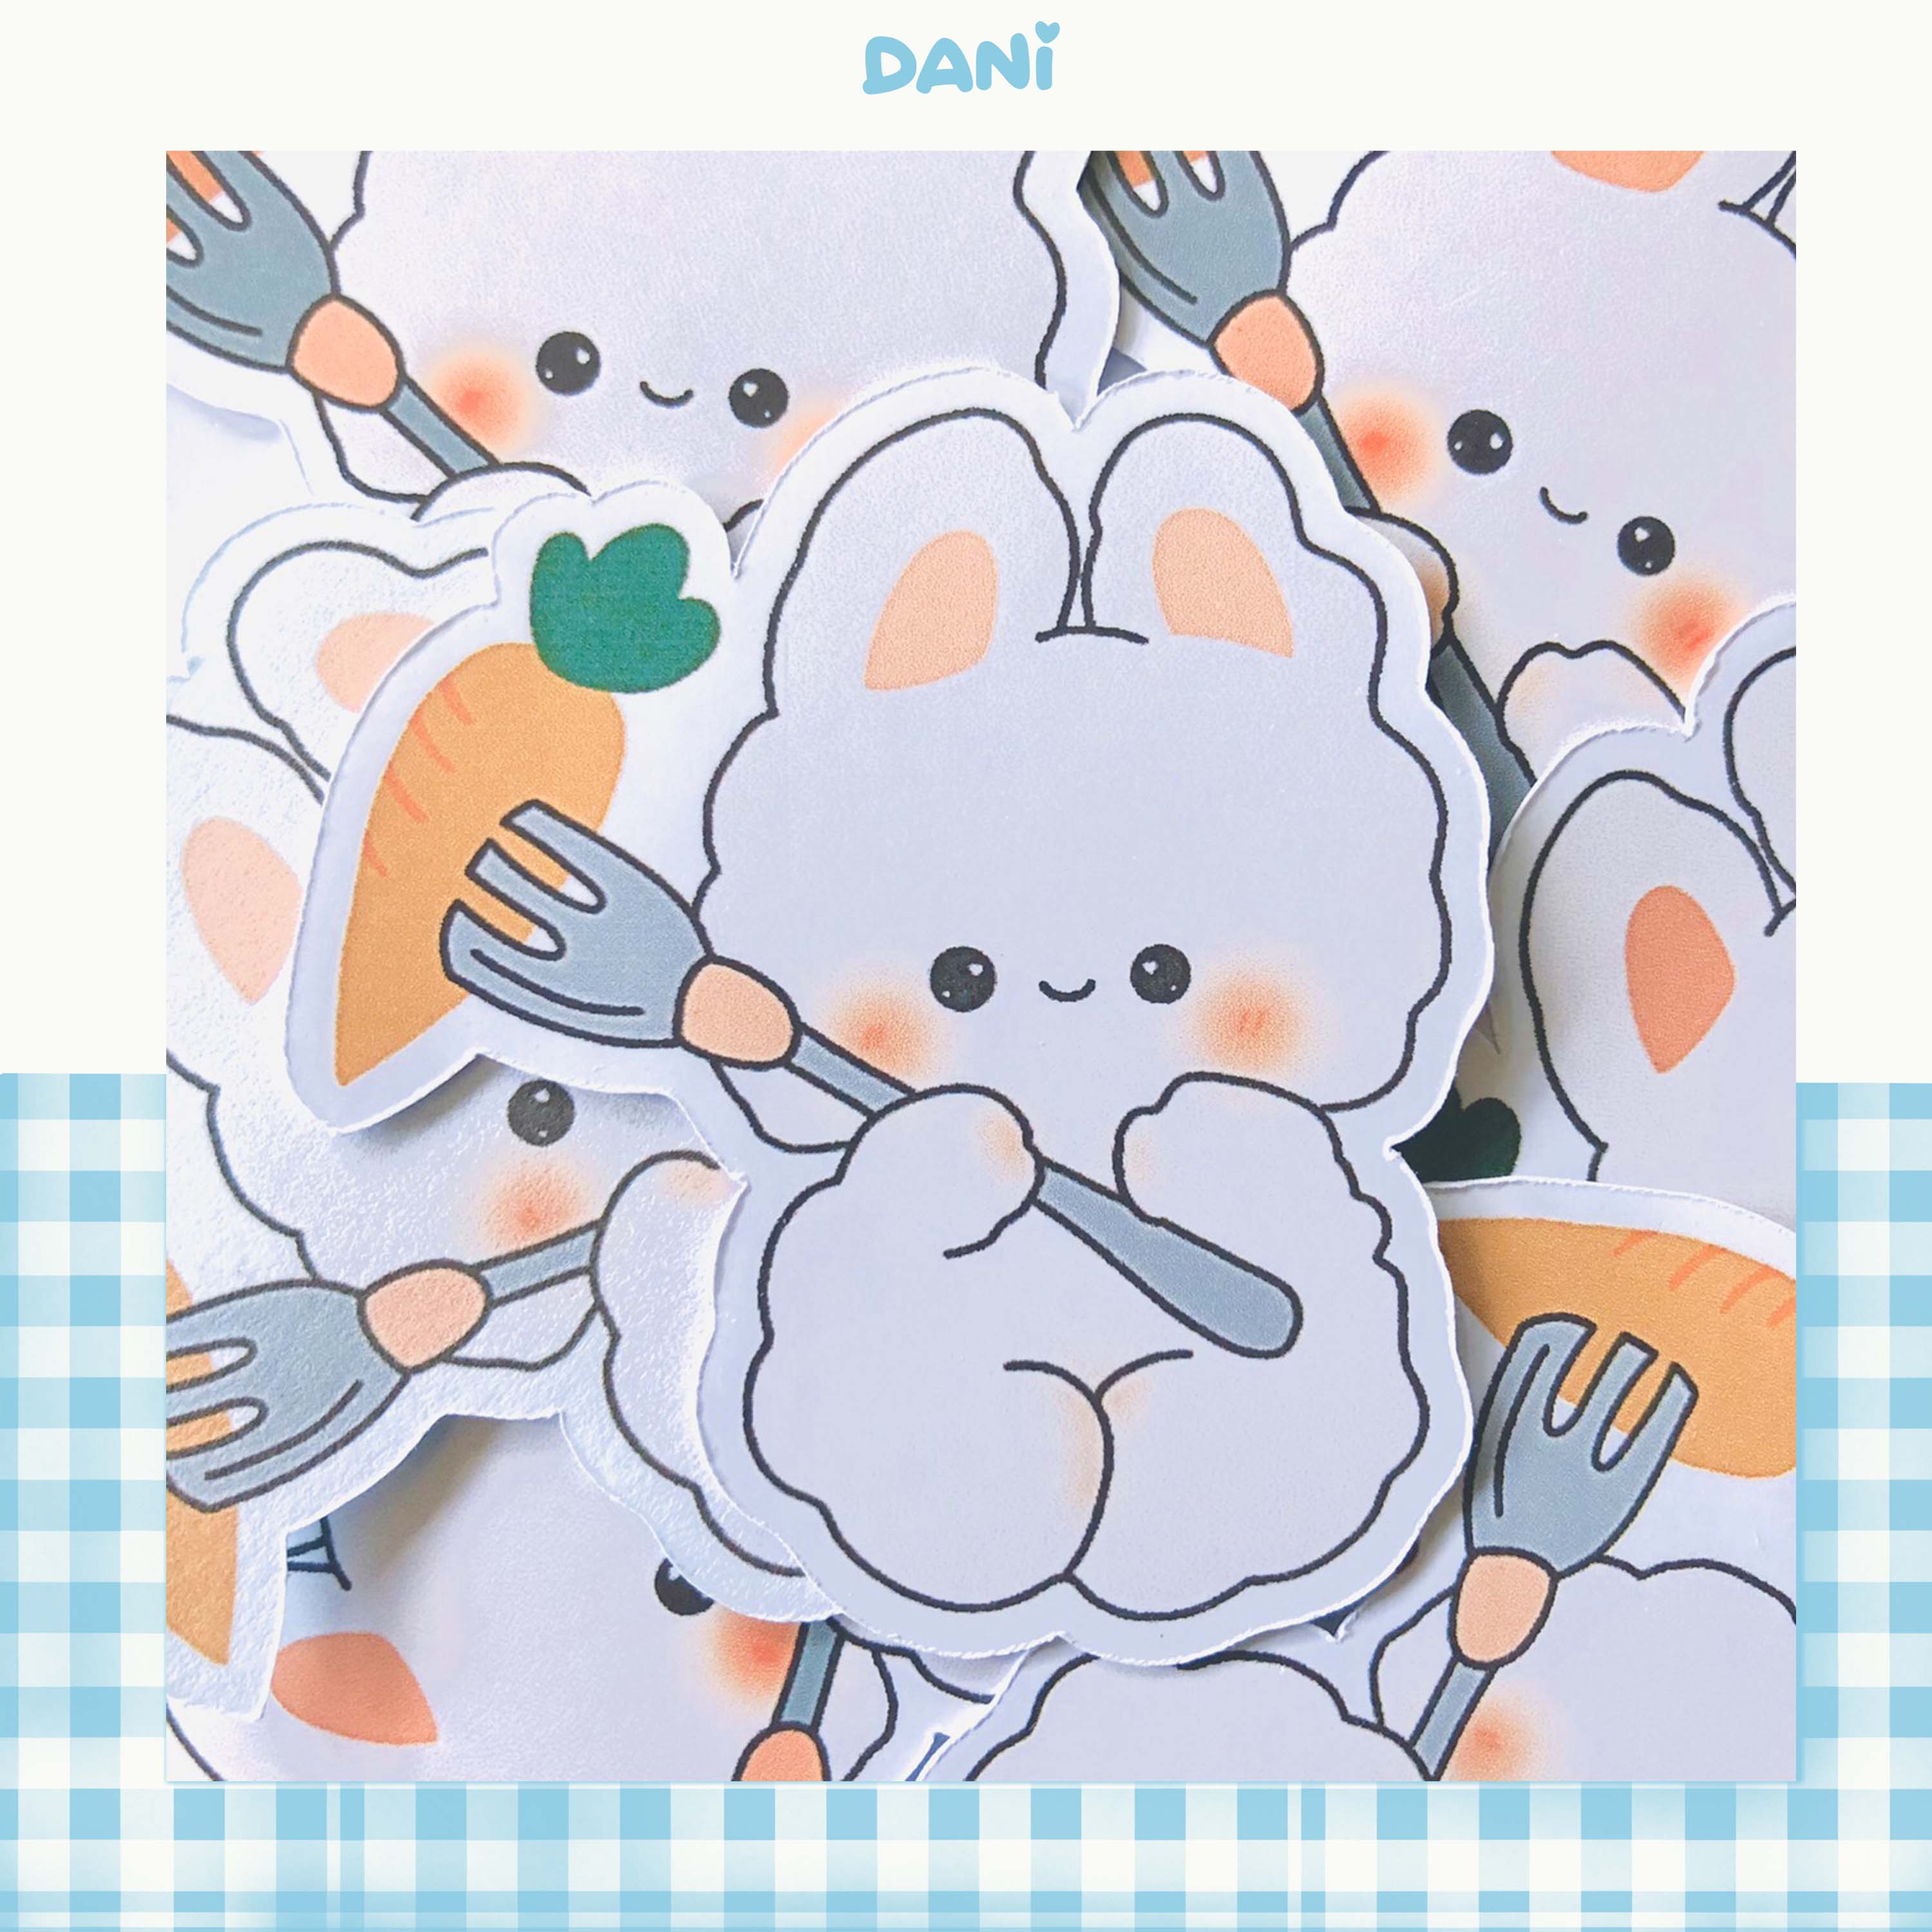 Sticker Cốc Kem Cute: Bạn là fan cực đắm say kem và muốn tìm kiếm các sticker liên quan đến kem? Hãy vào trang của chúng tôi và xem ngay những mẫu sticker cốc kem đáng yêu nhất. Sẽ có thể sử dụng chúng để trang trí cho điện thoại của bạn đấy.